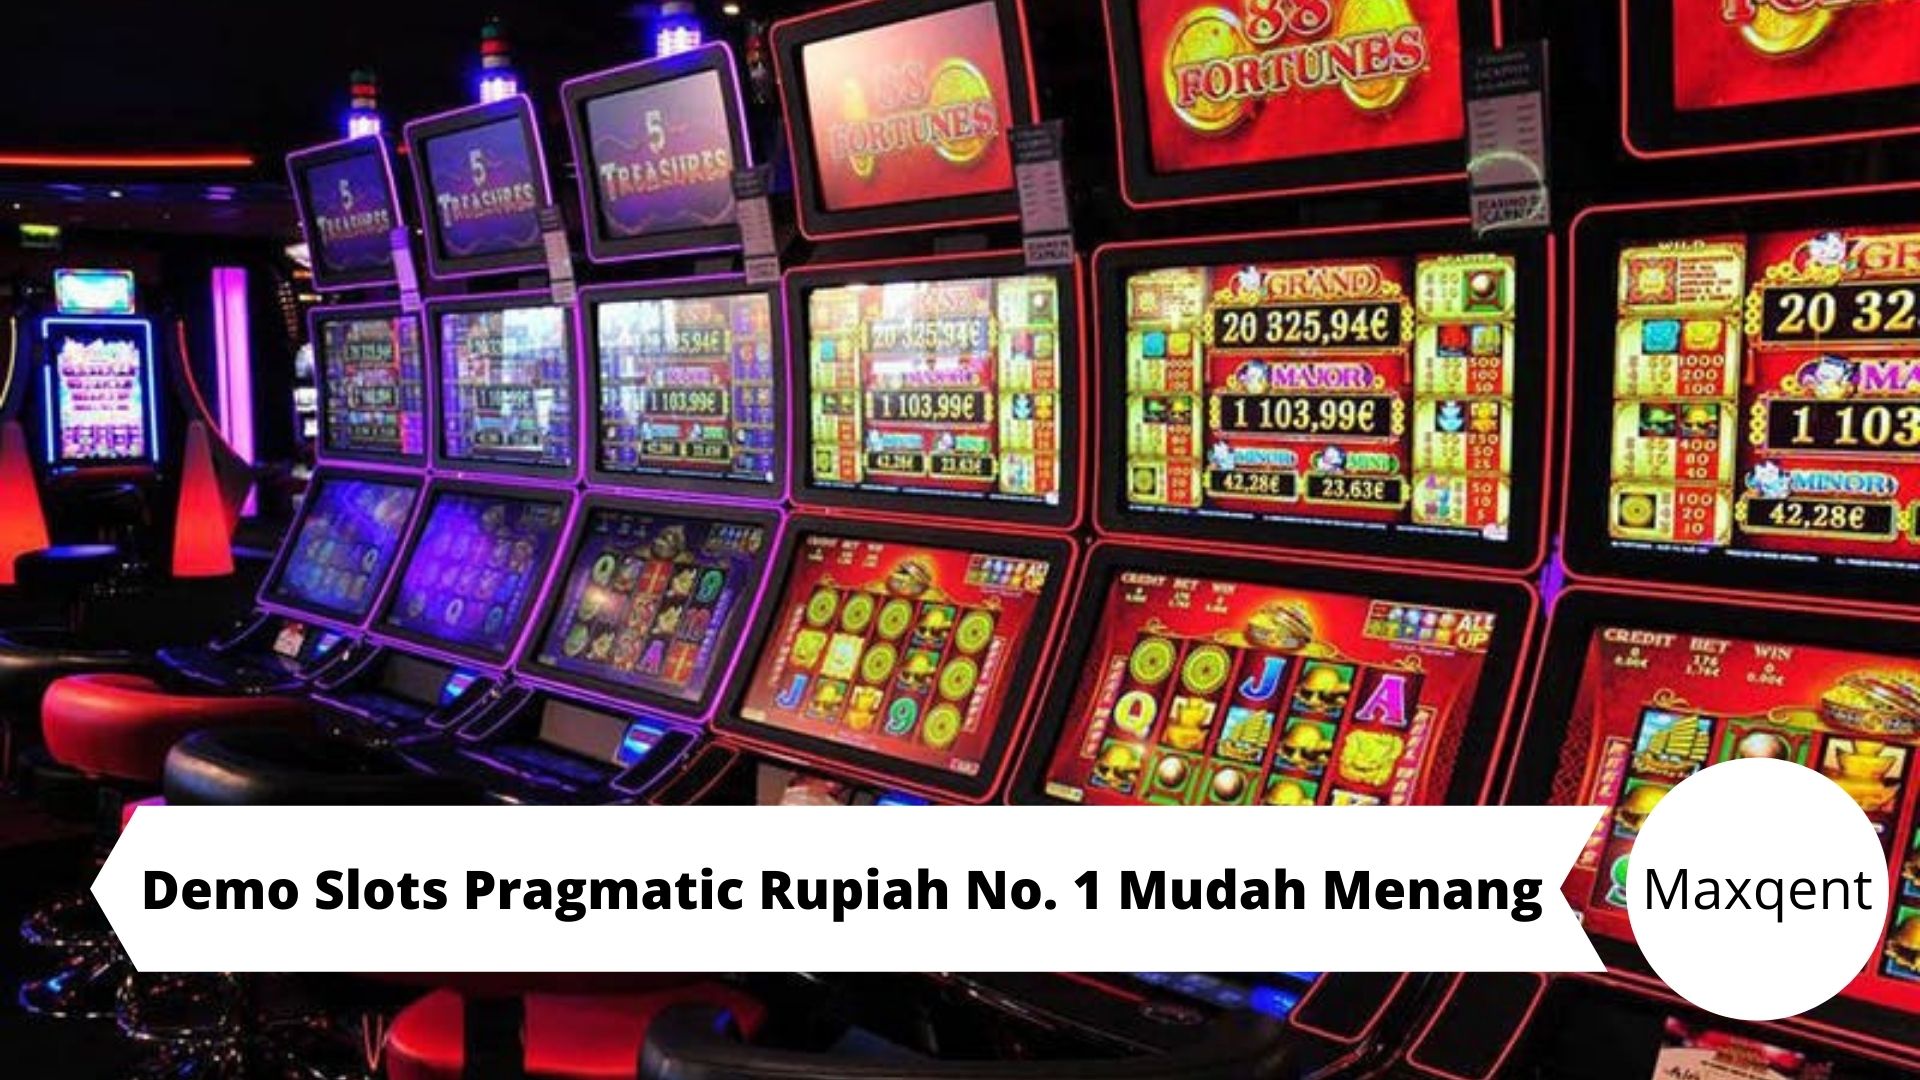 Demo Slots Pragmatic Rupiah No. 1 Mudah Menang